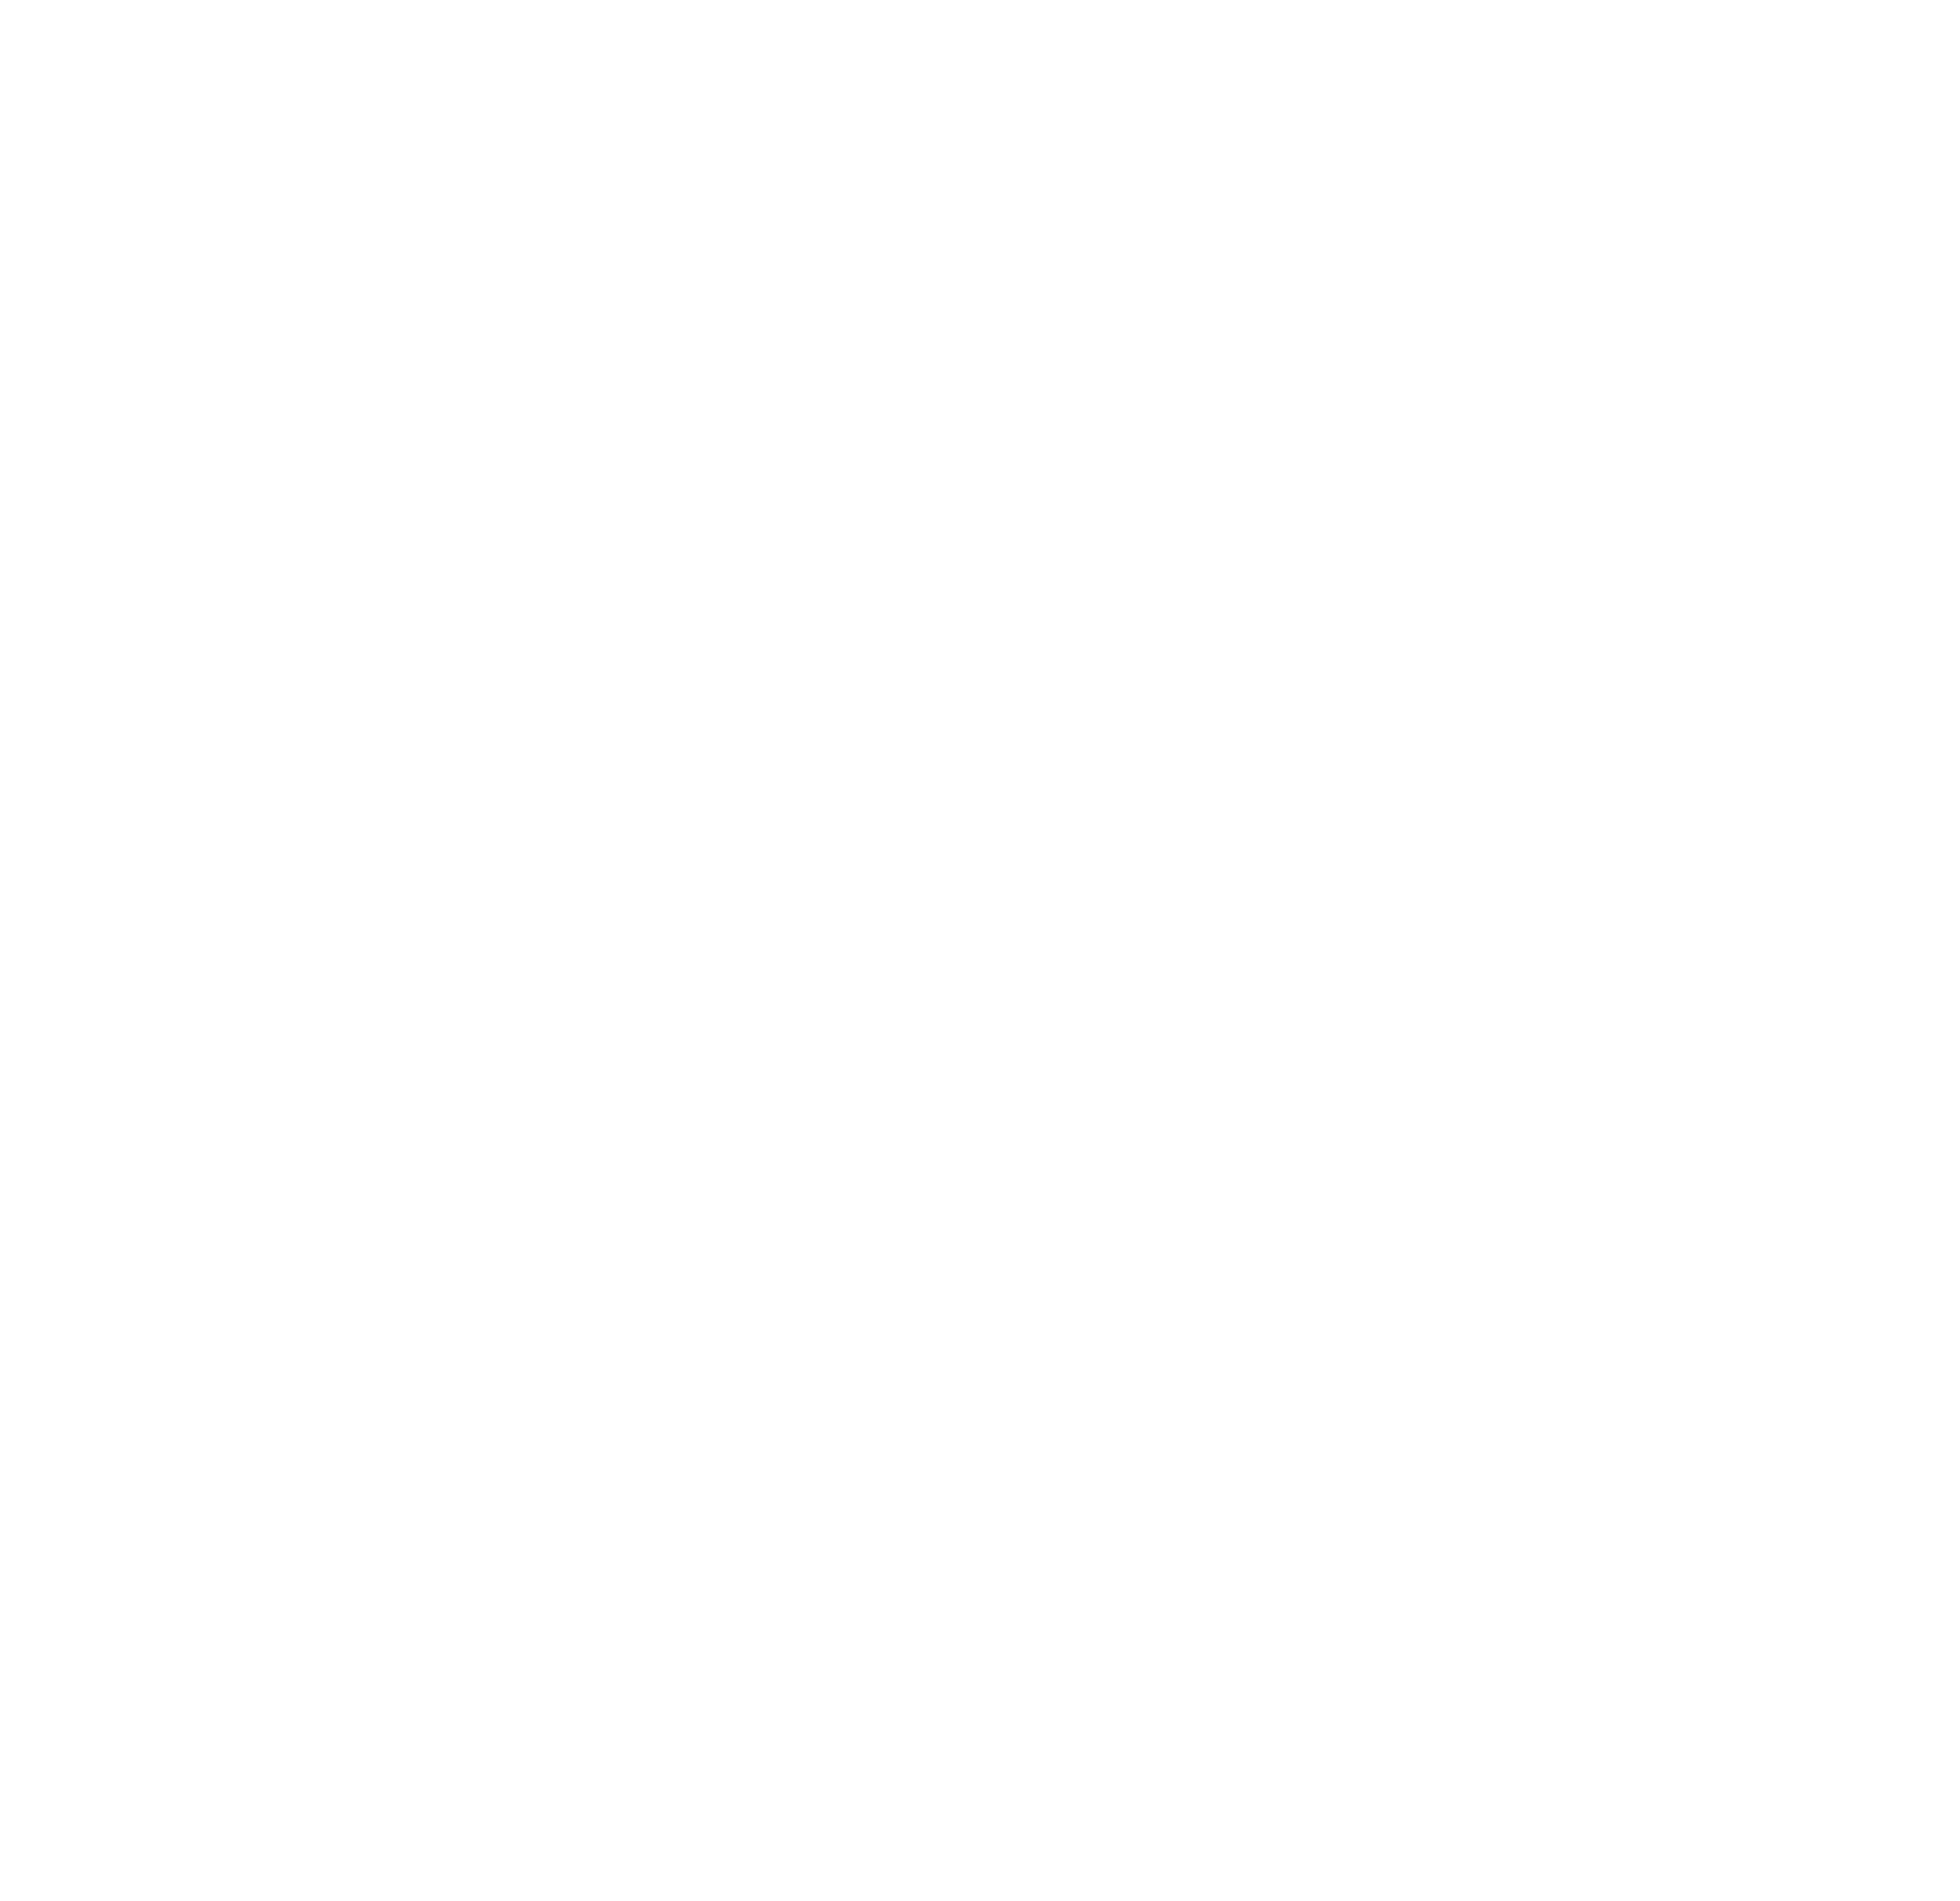 Hopwoods